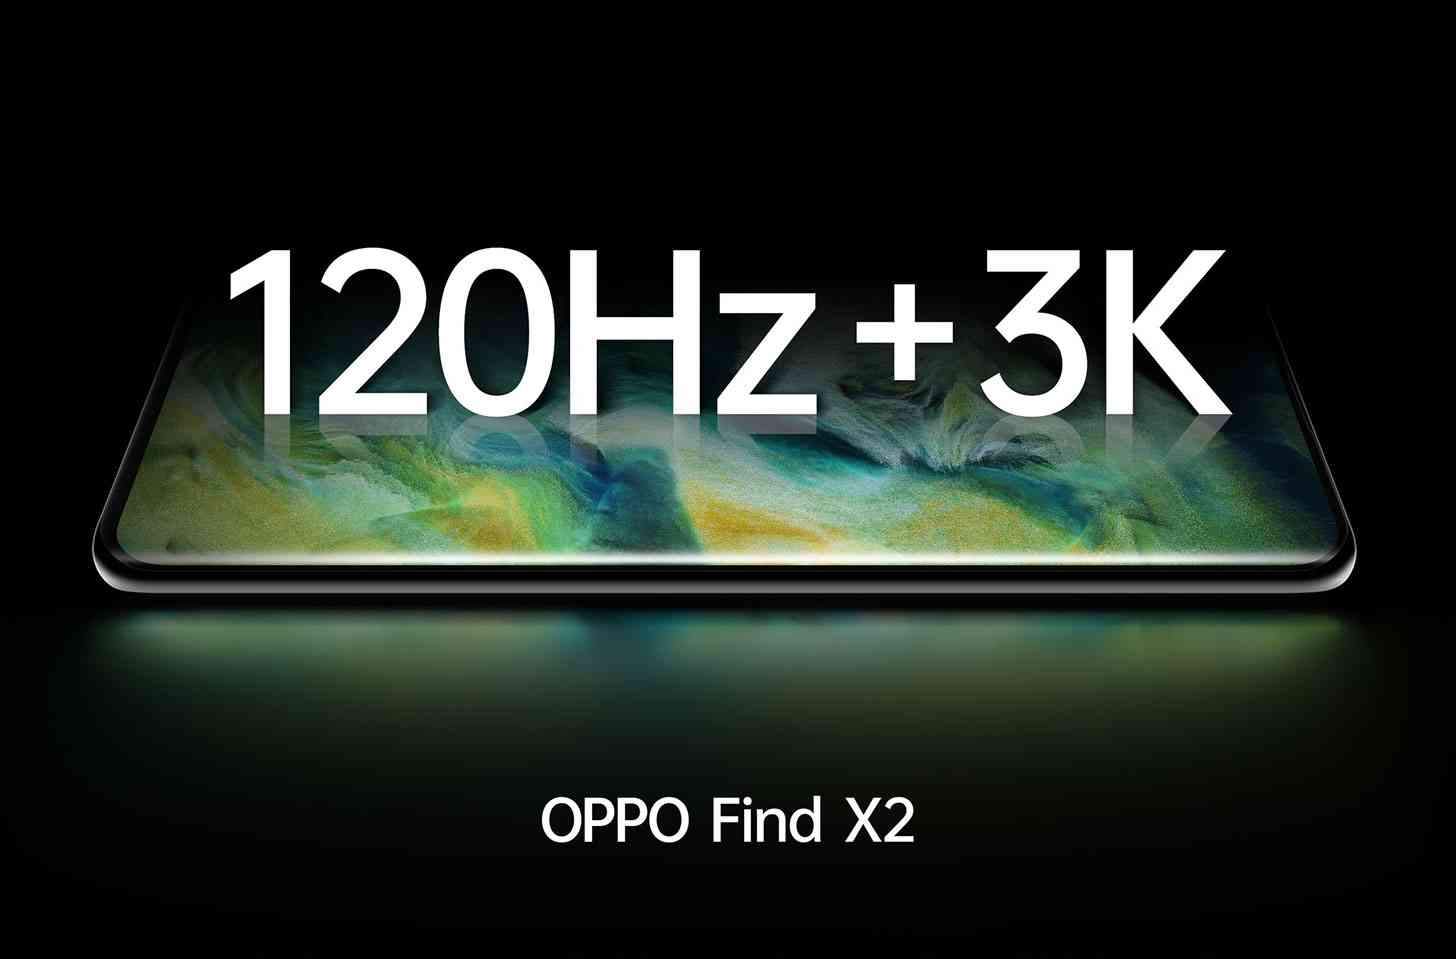 Oppo Find X2 120Hz 3K display